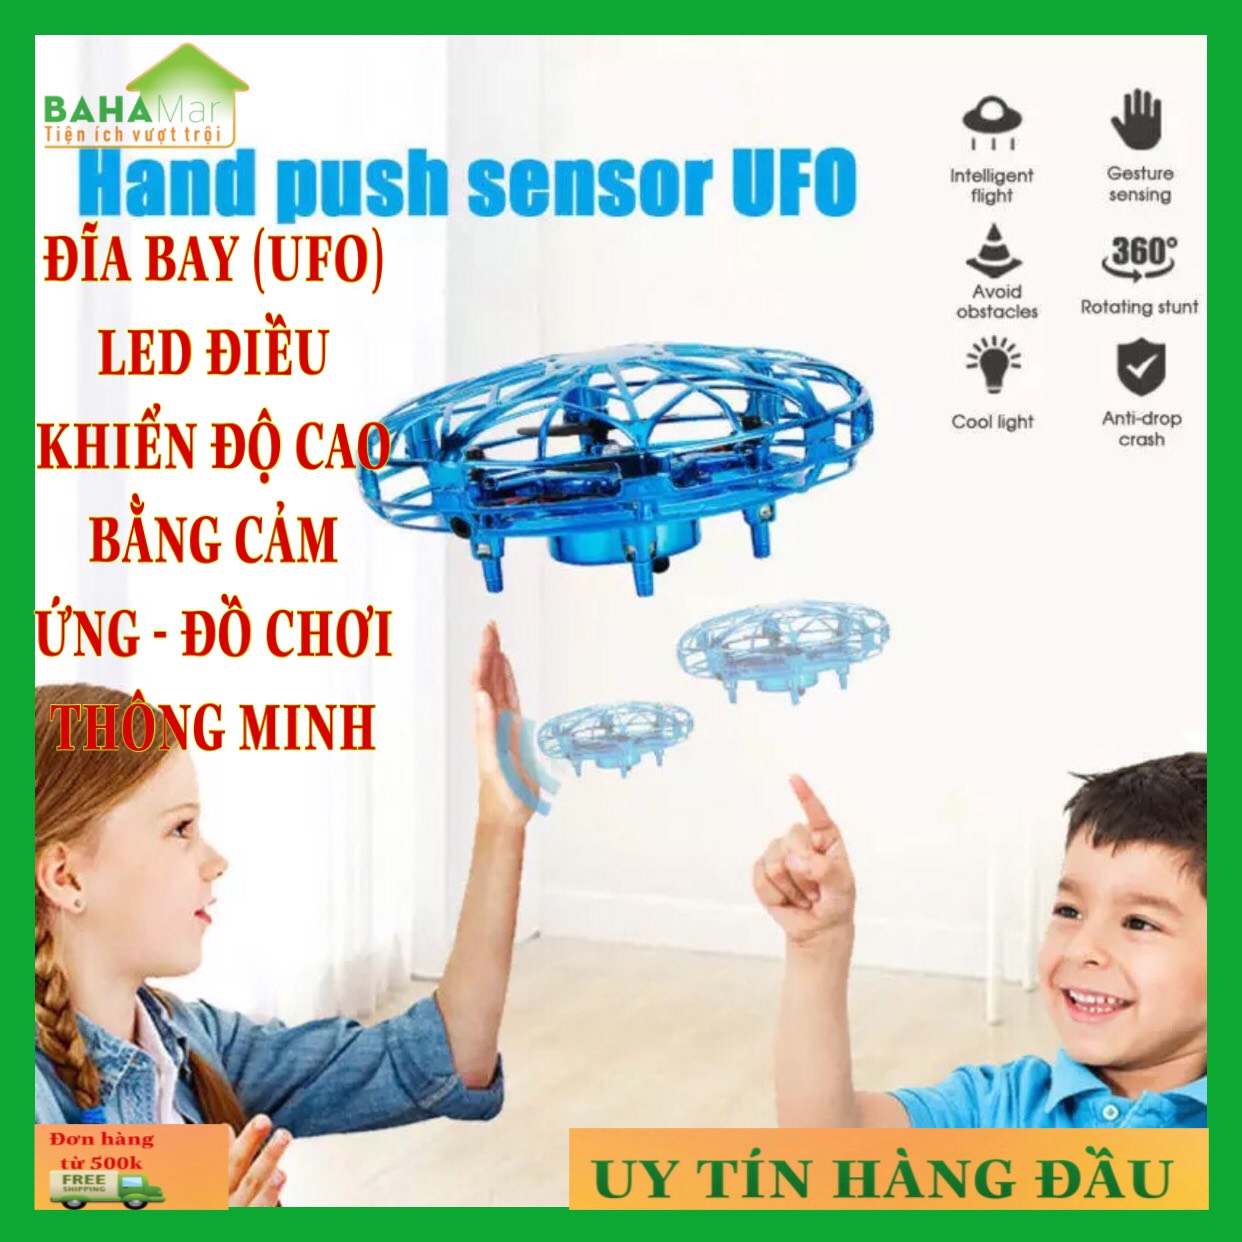 ĐĨA BAY (UFO) LED ĐIỀU KHIỂN ĐỘ CAO BẰNG CẢM ỨNG - ĐỒ CHƠI THÔNG MINH "BAHAMAR" đường kính nhỏ, kết cấu mềm mại, chống va chạm, có cảm ứng hồng ngoại, thích hợp cho cả trẻ em và người lớn